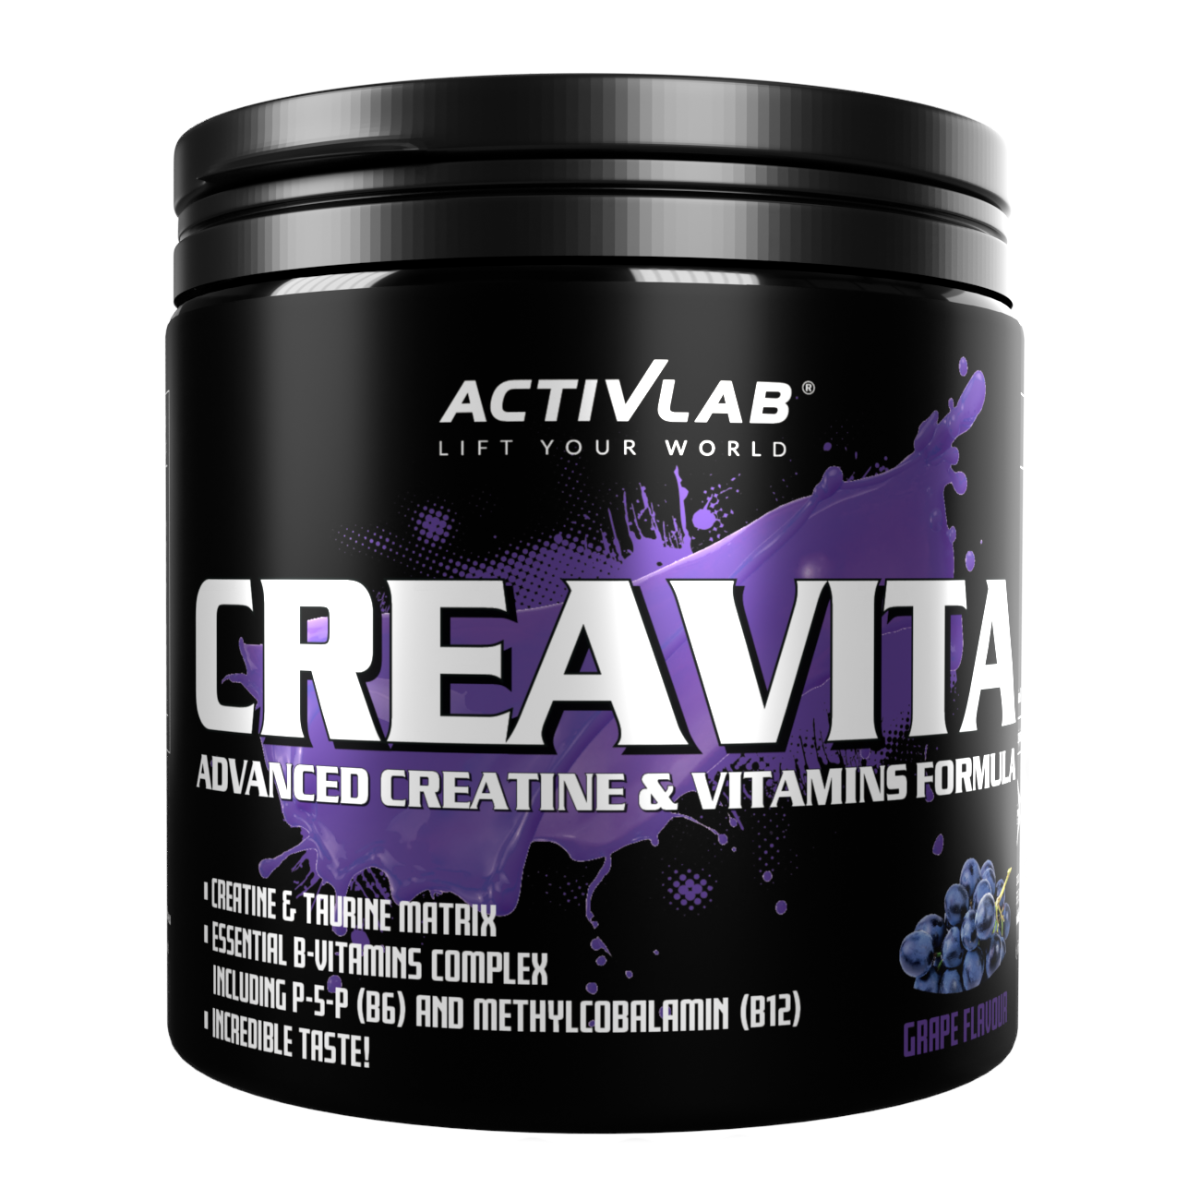 E-shop Creavita - Activlab